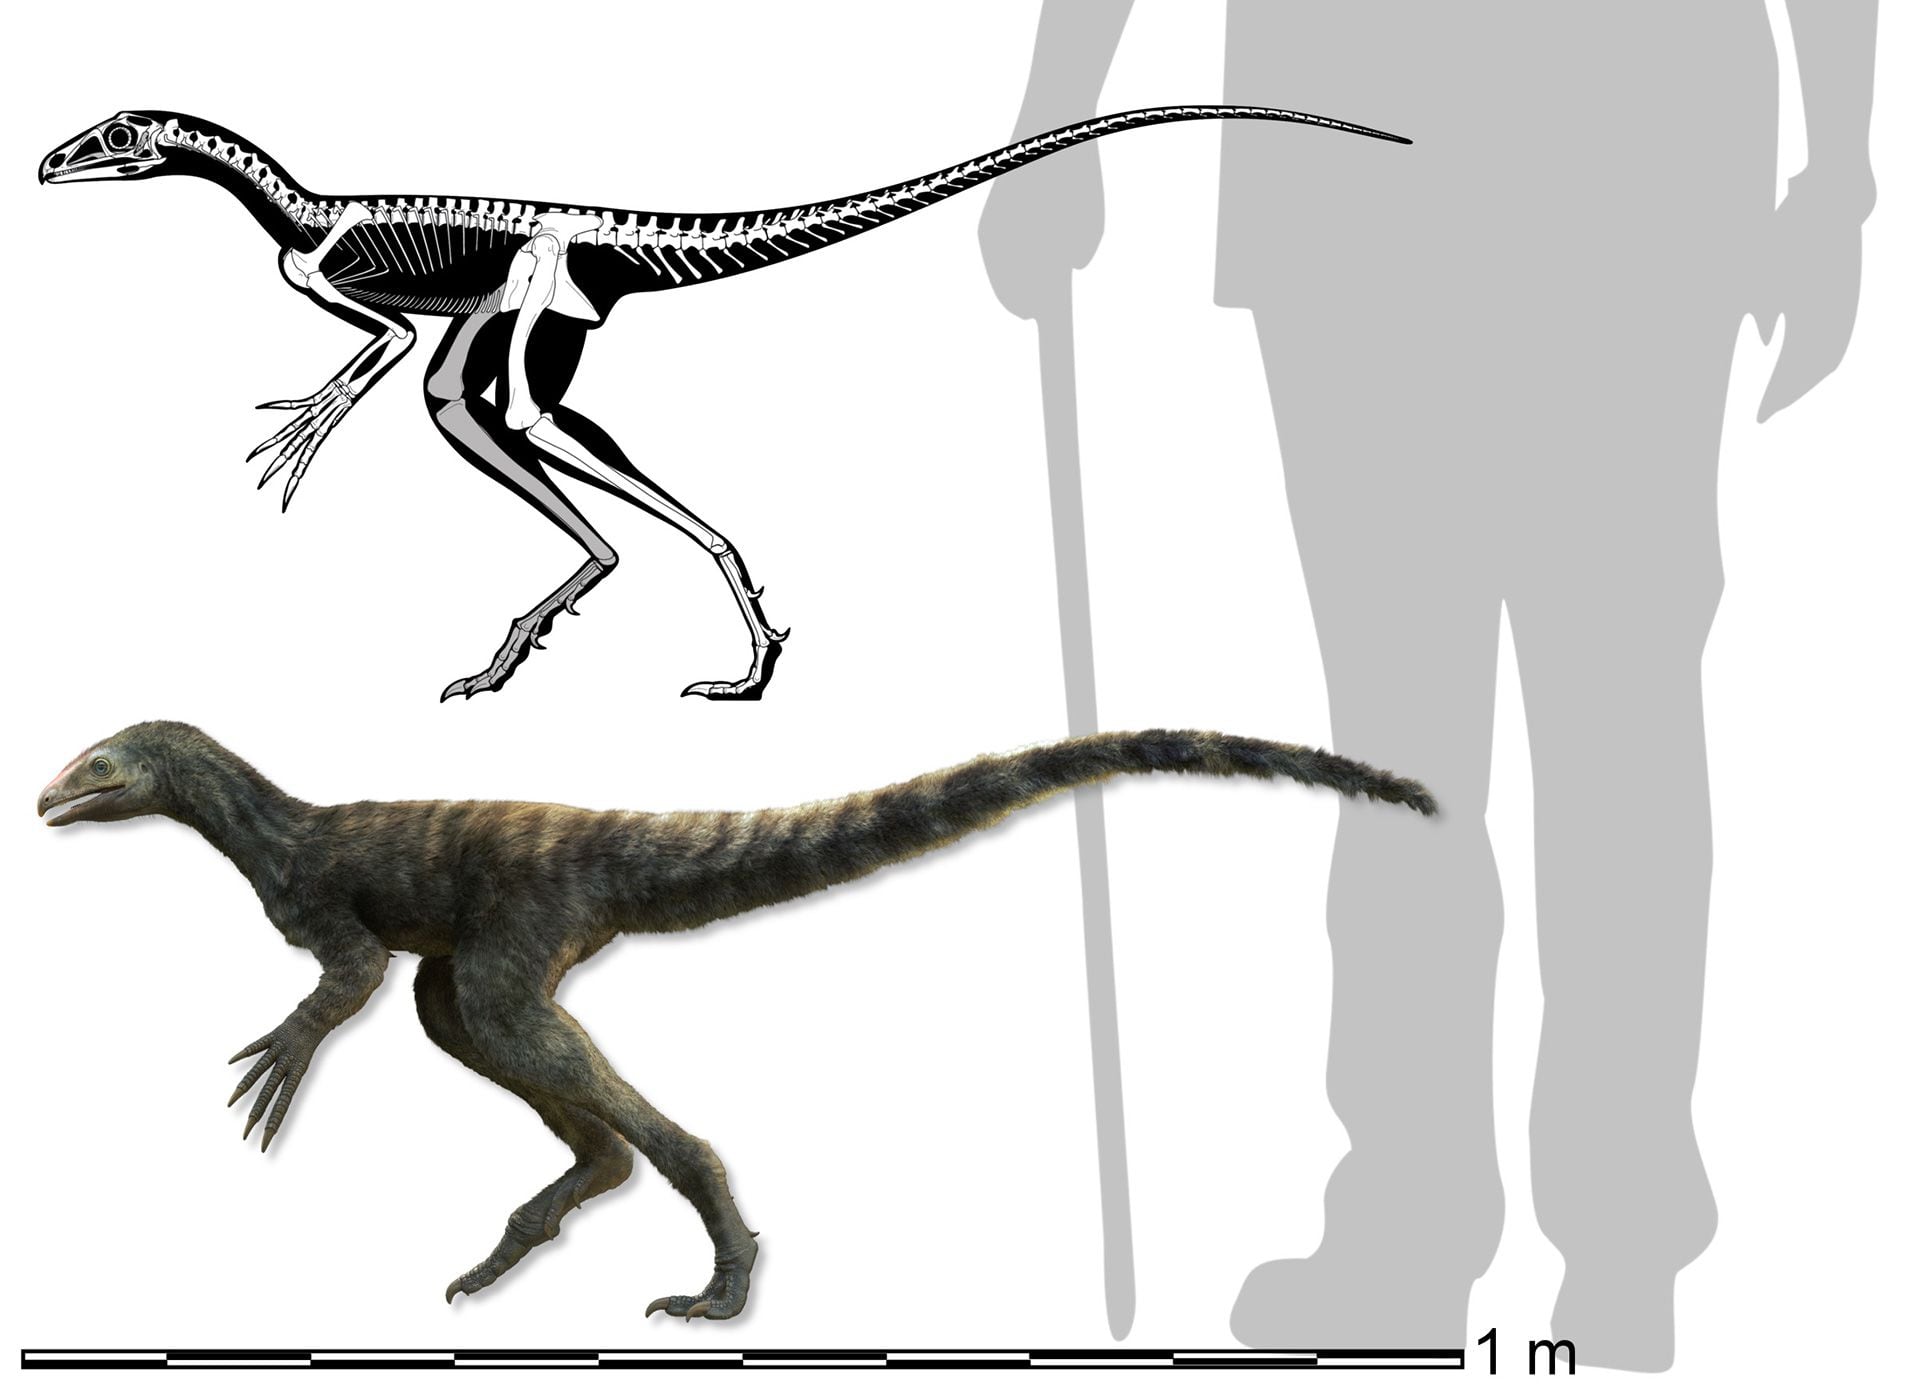 Cómo era el Venetoraptor en tamaño con respecto a los humanos de hoy. Vivió hace 230 millones de años, cuando los humanos aún no existían/
Caio Fantini